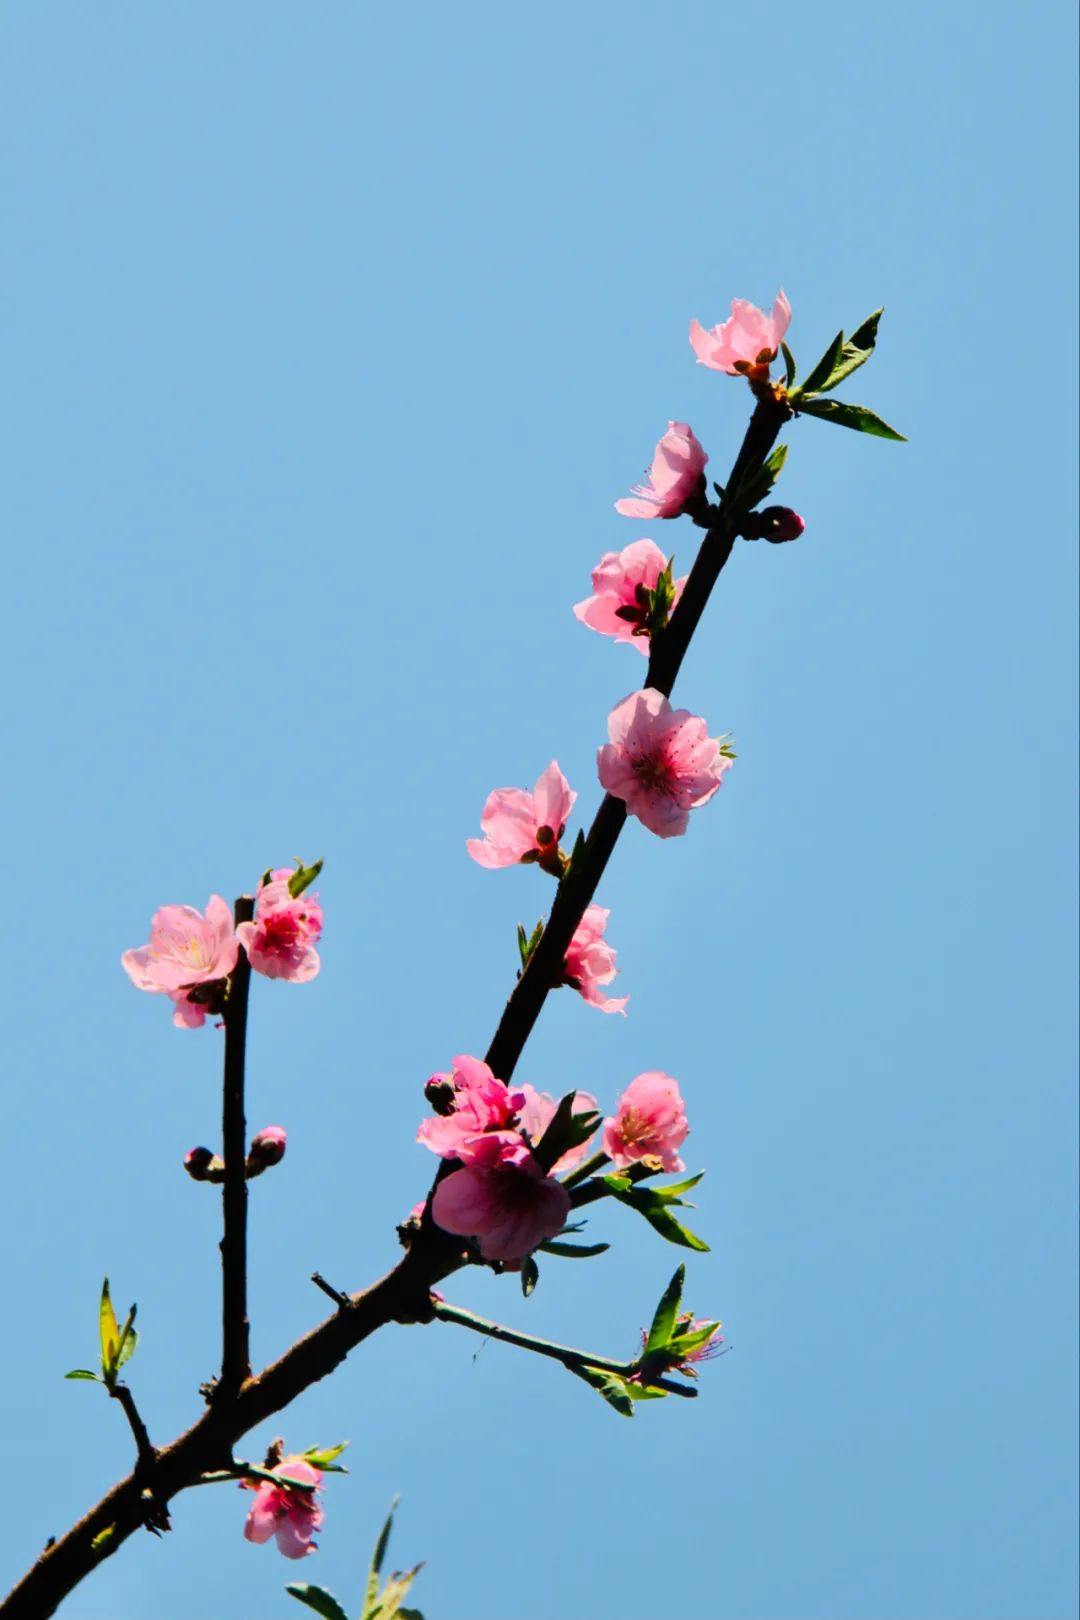 和桃花有关的诗句有哪些，形容桃花的唯美诗词大全